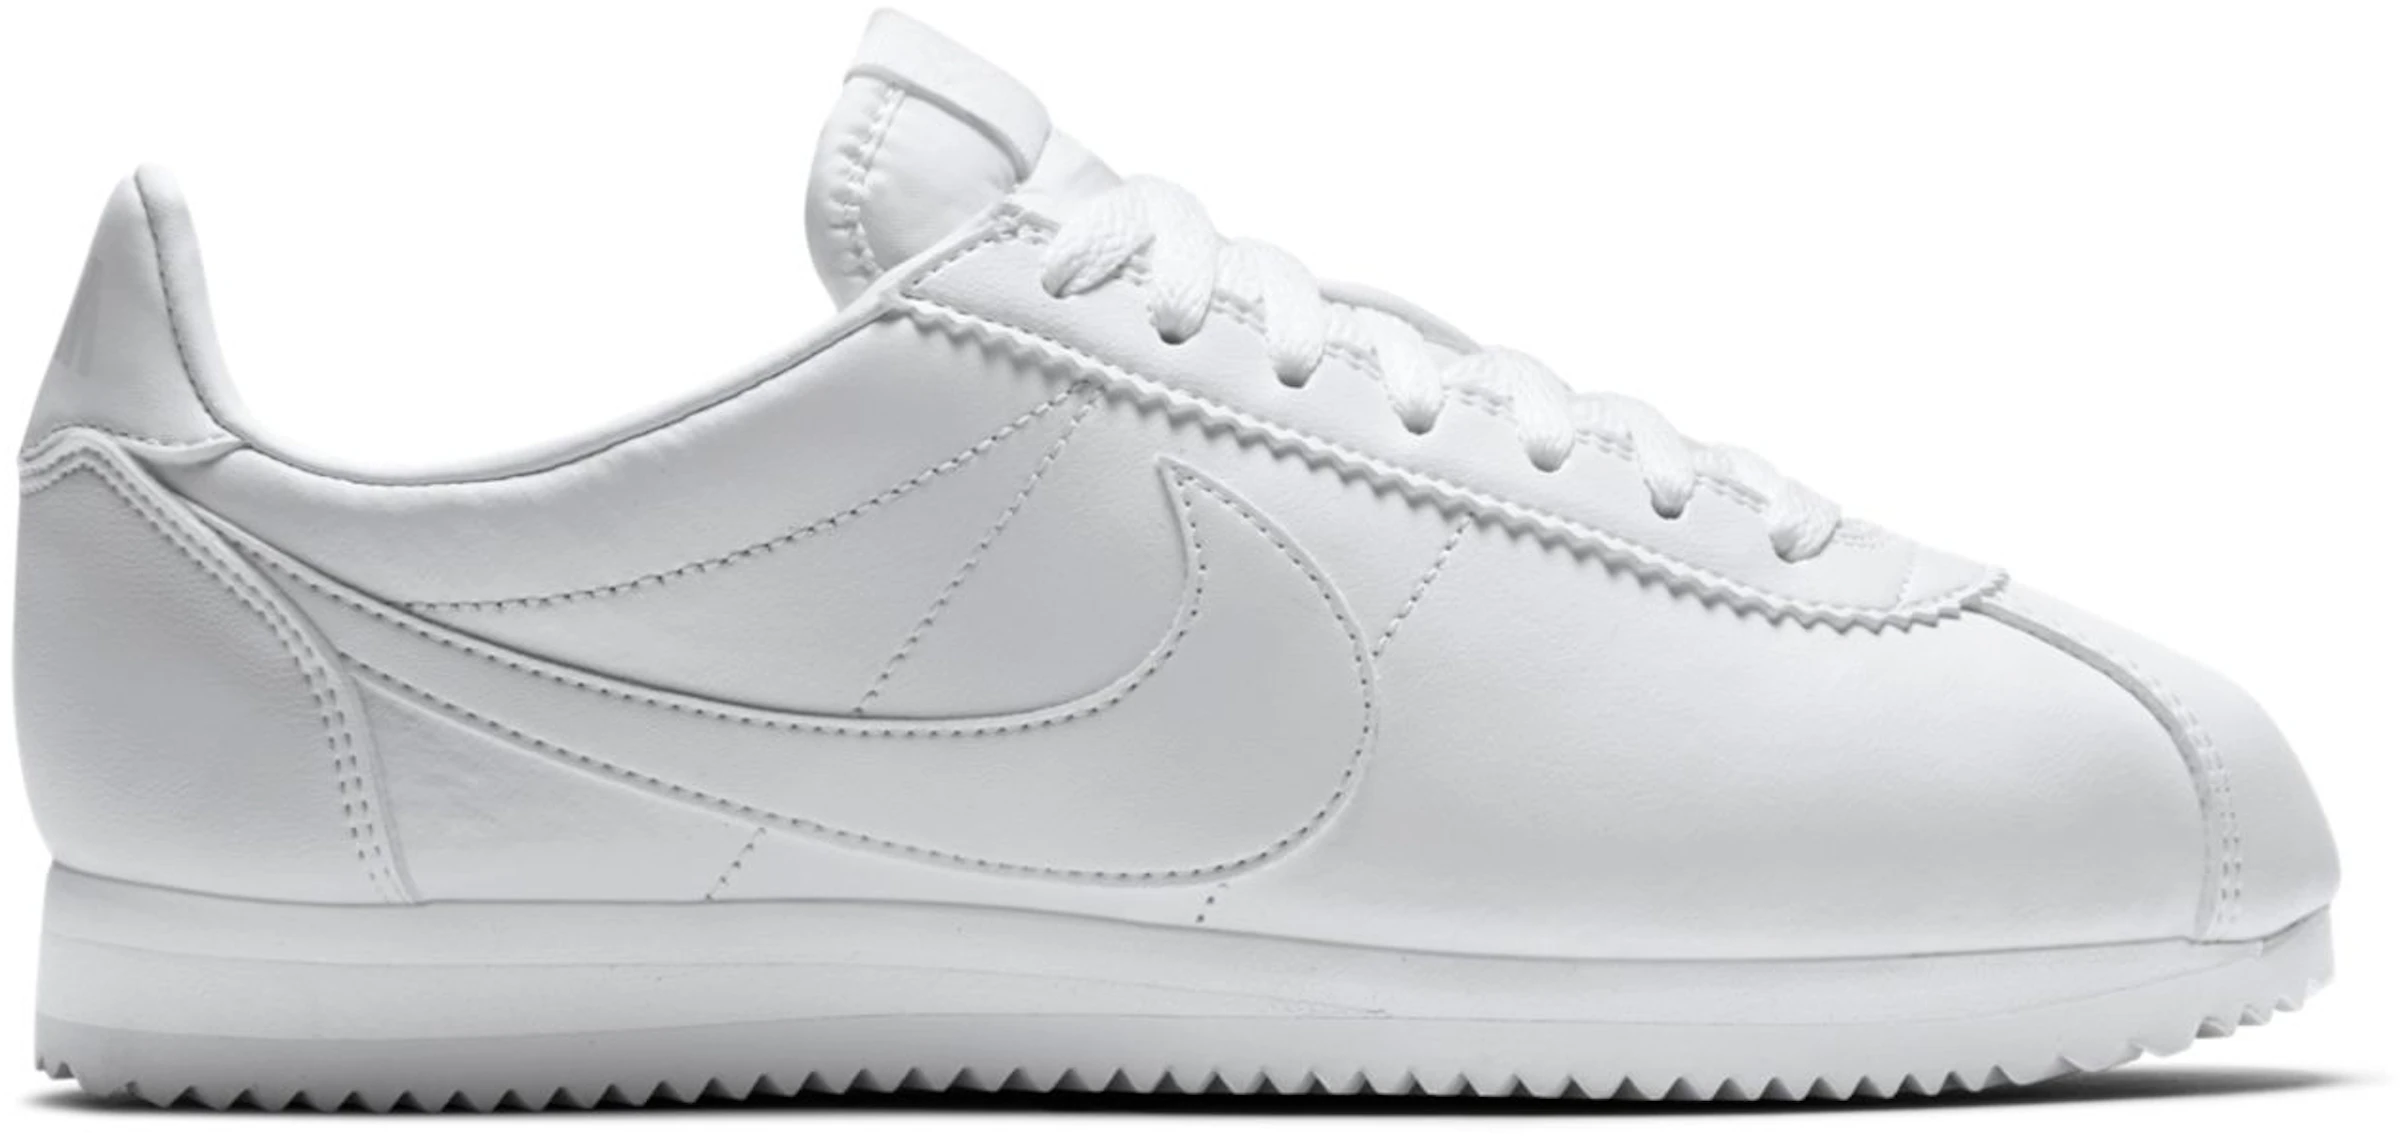 Exclusión horizonte Primero Nike Classic Cortez Leather White (W) - 807471-102 - ES